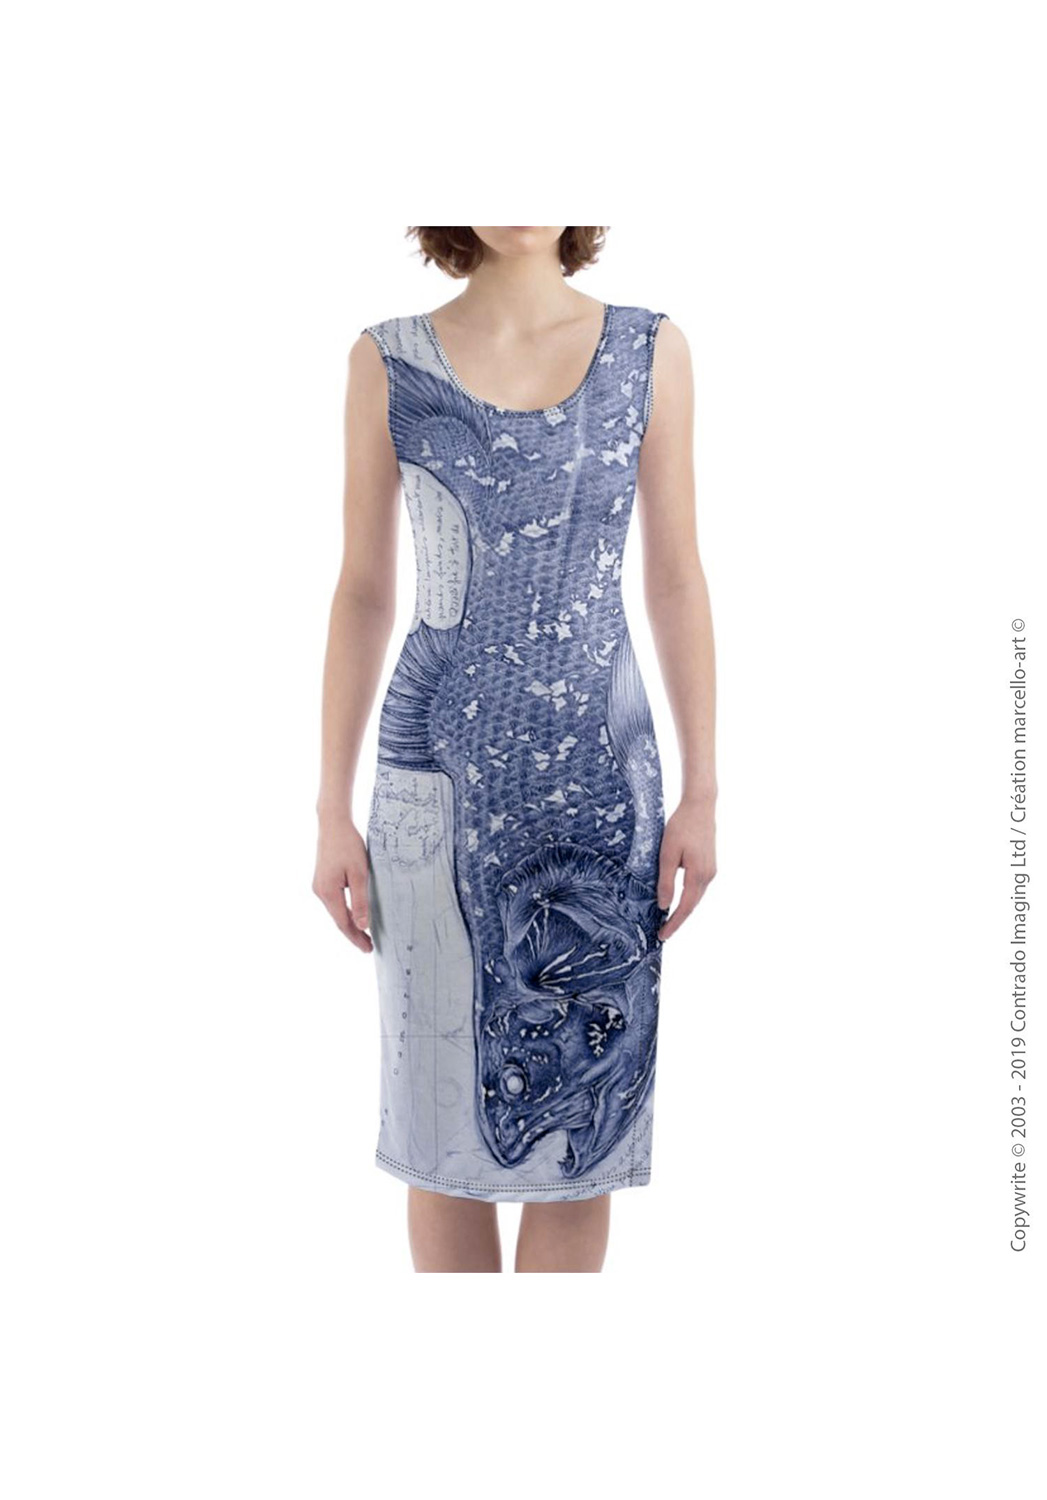 Marcello-art: Dresses Mid-length dress 346 Latimeria chalumnae